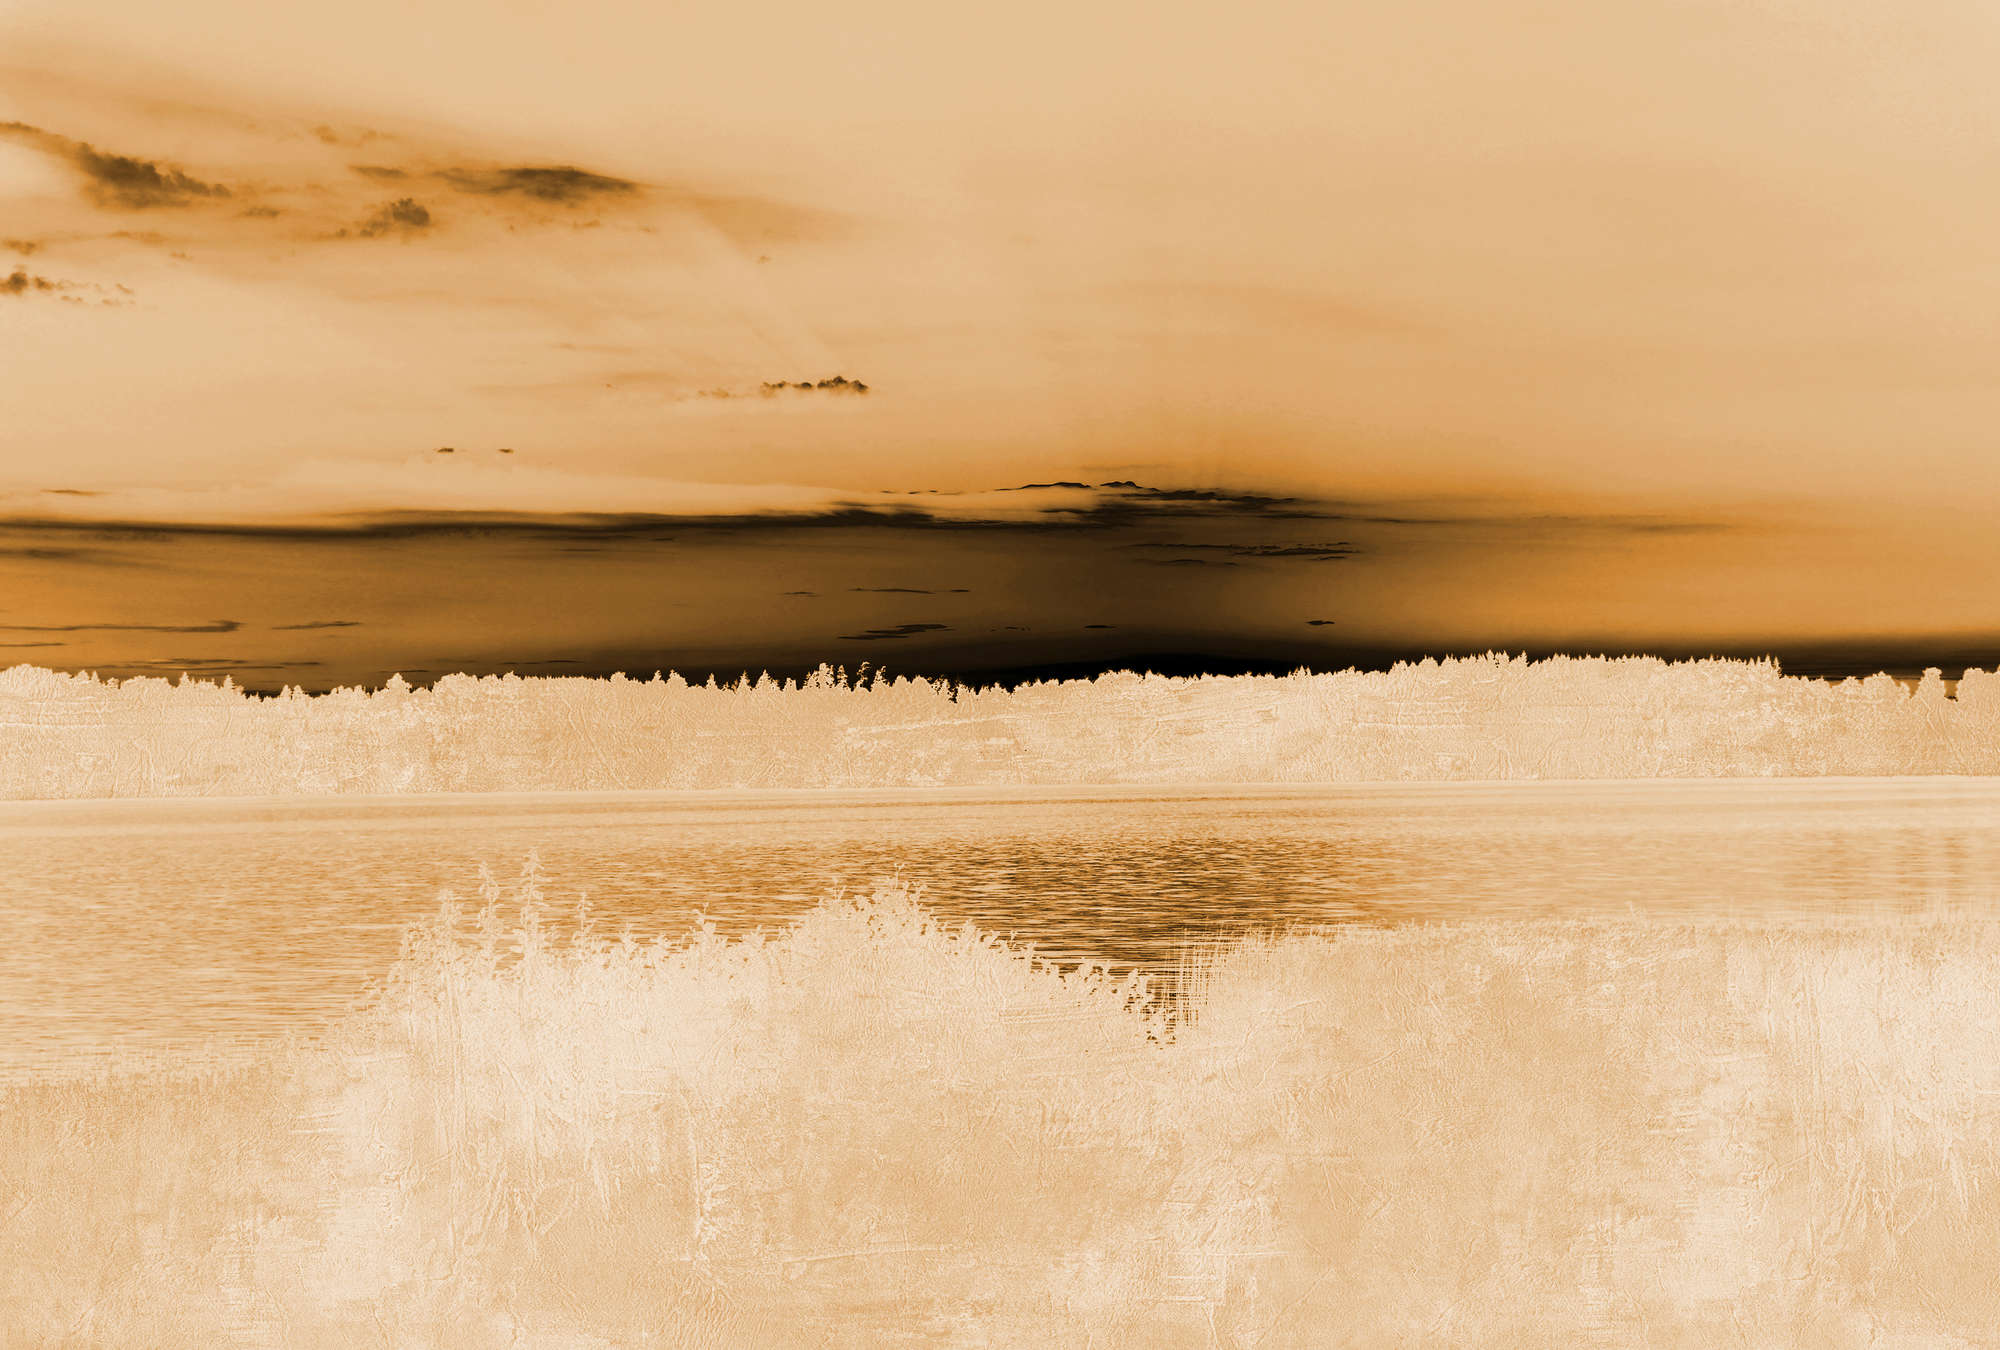             Papier peint paysage, vue sur le lac & ciel nuageux - orange, beige, noir
        